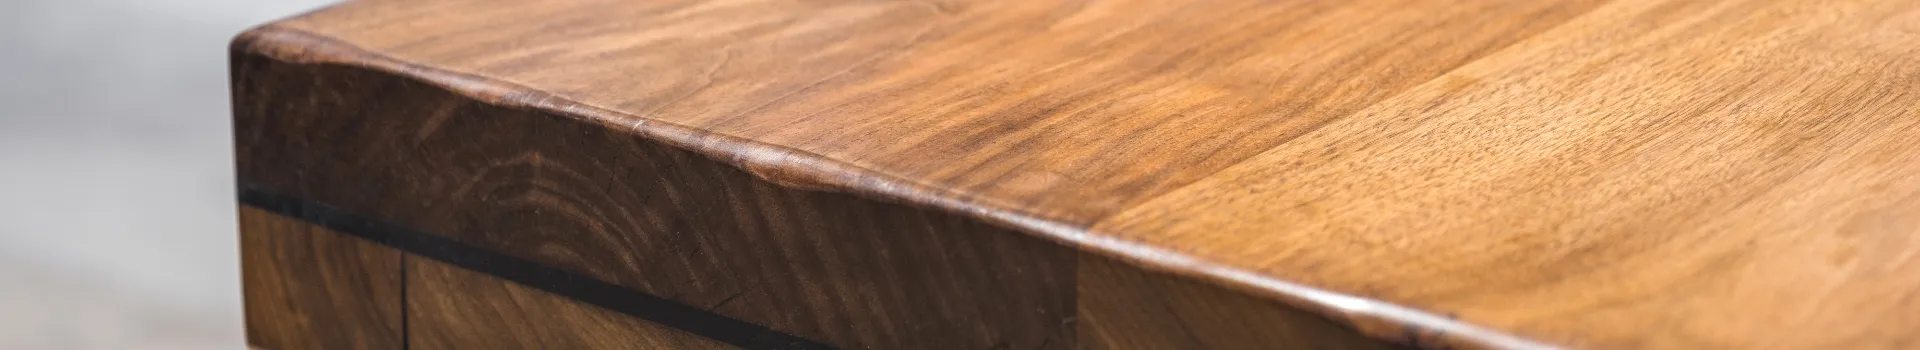 kant stołu